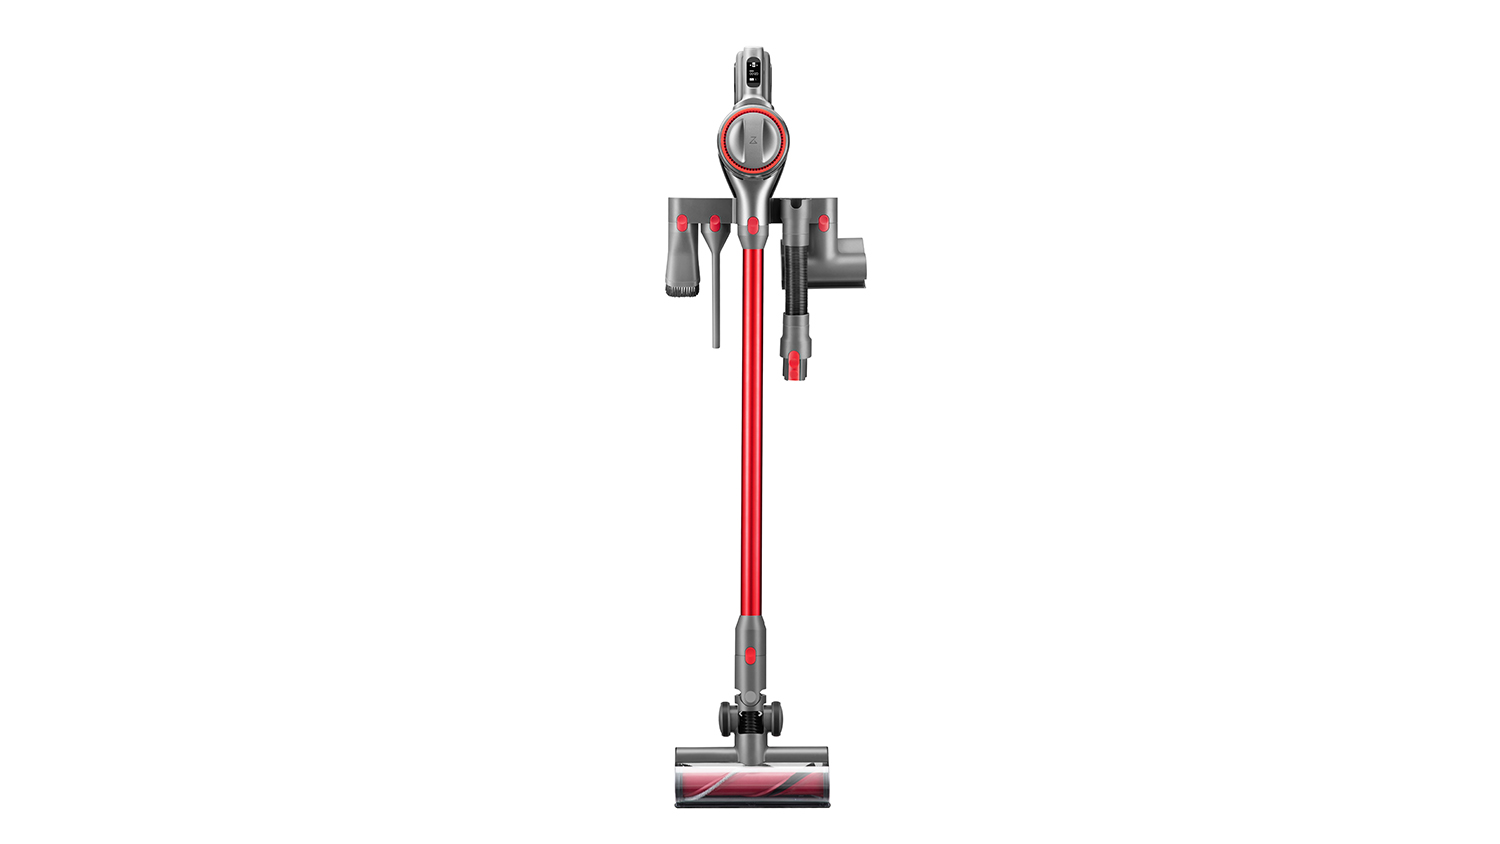 Roborock H6 Adapt cordless stick vacuum